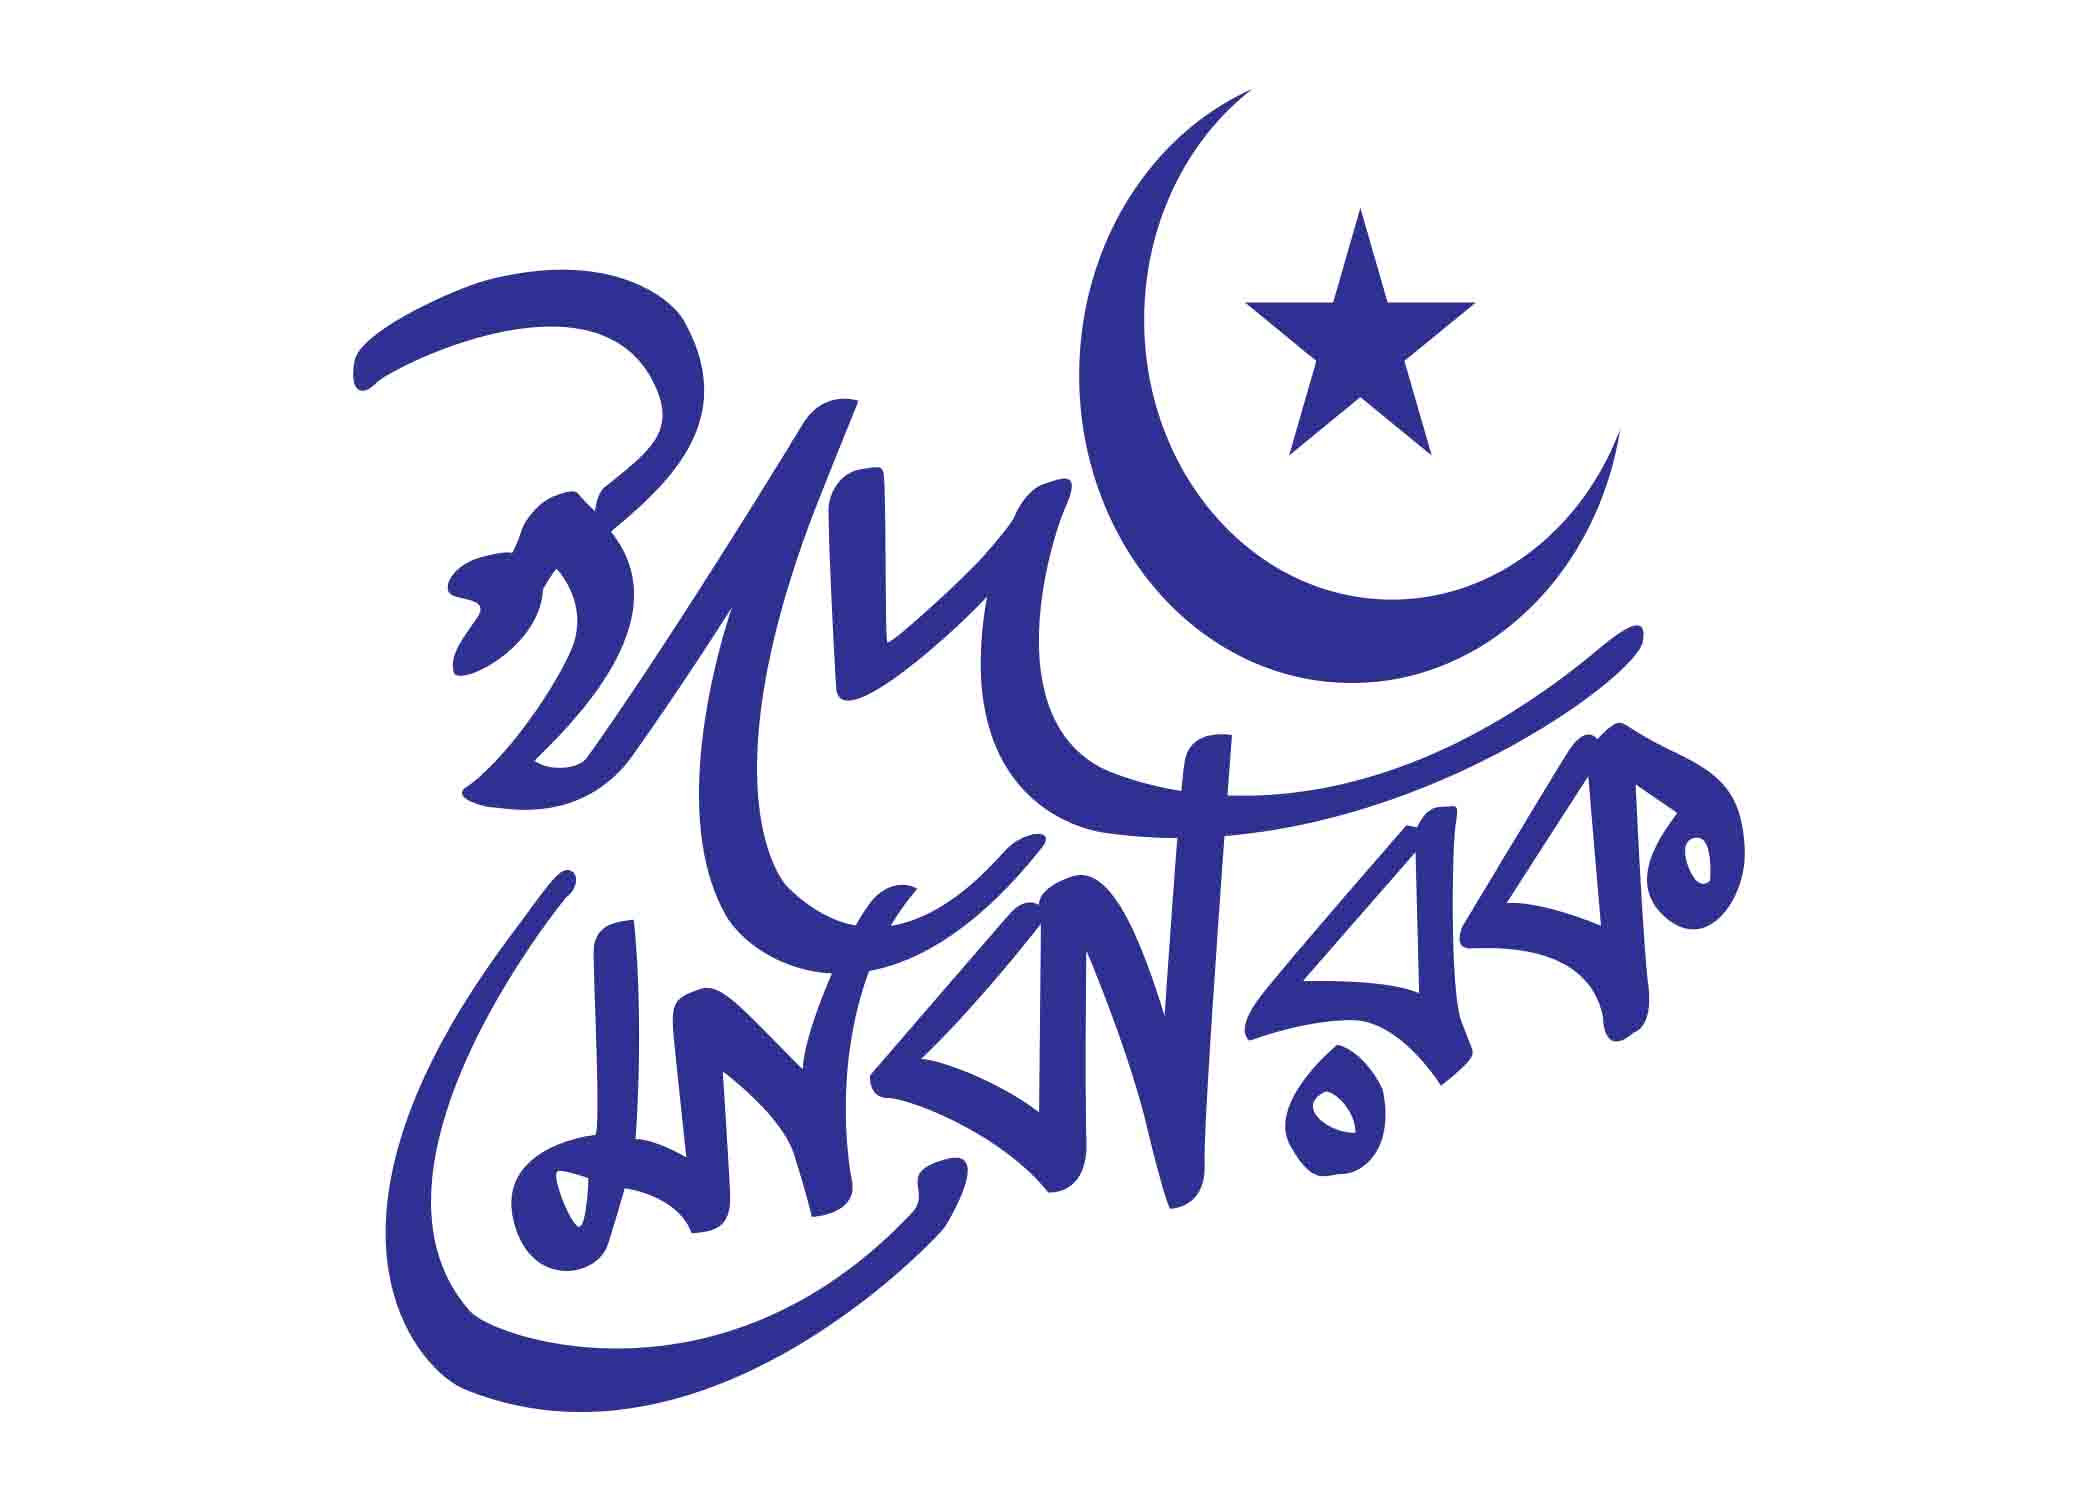 ঈদ মোবারক- Eid Mobarok